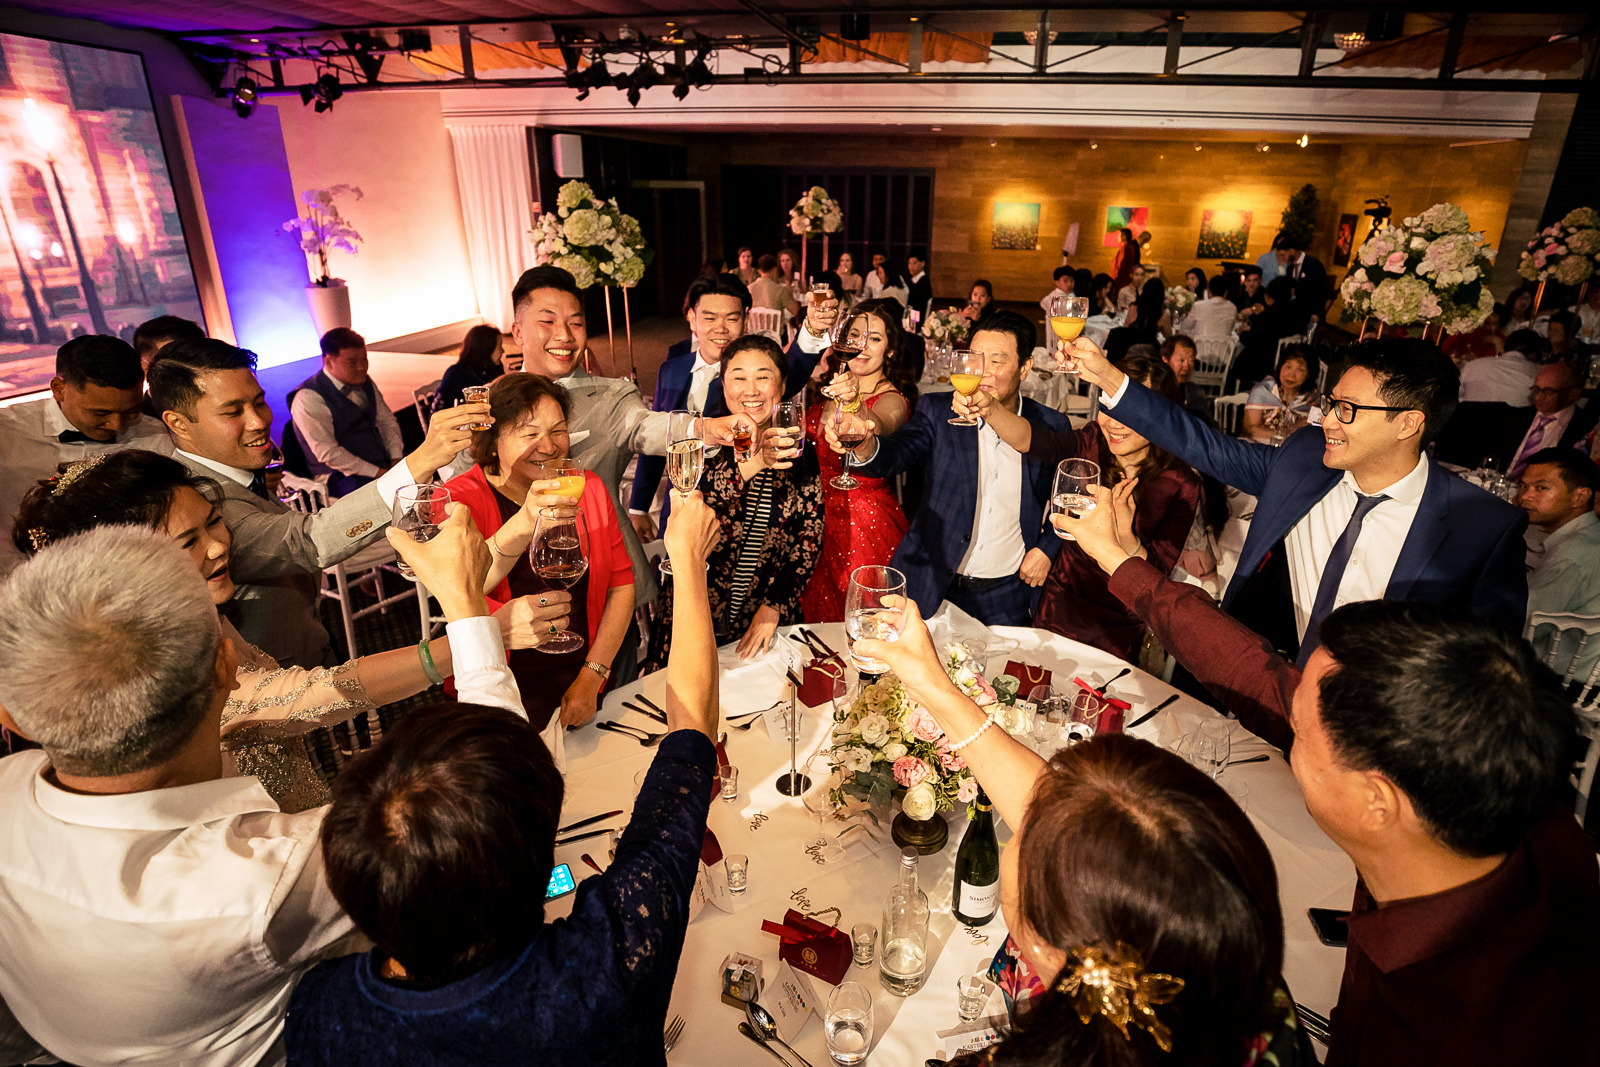 Trouwfotograaf Chinese bruiloft proost moment tijdens diner